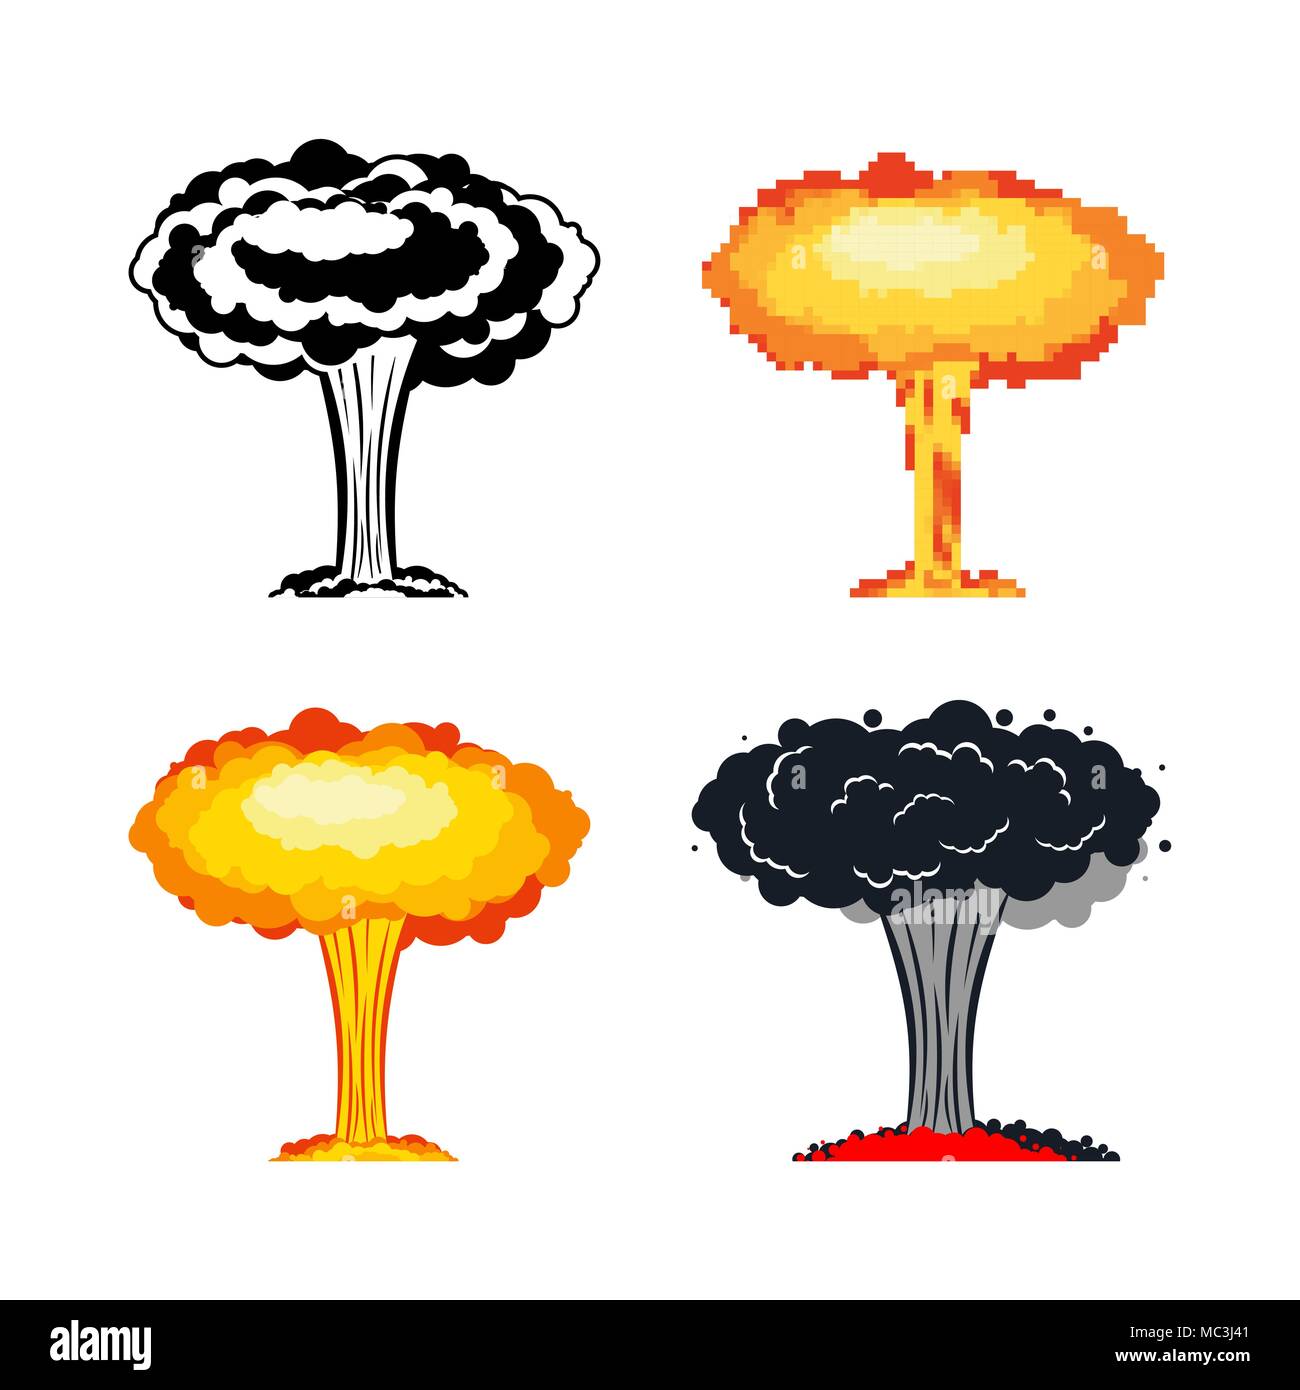 Ядерный гриб химия